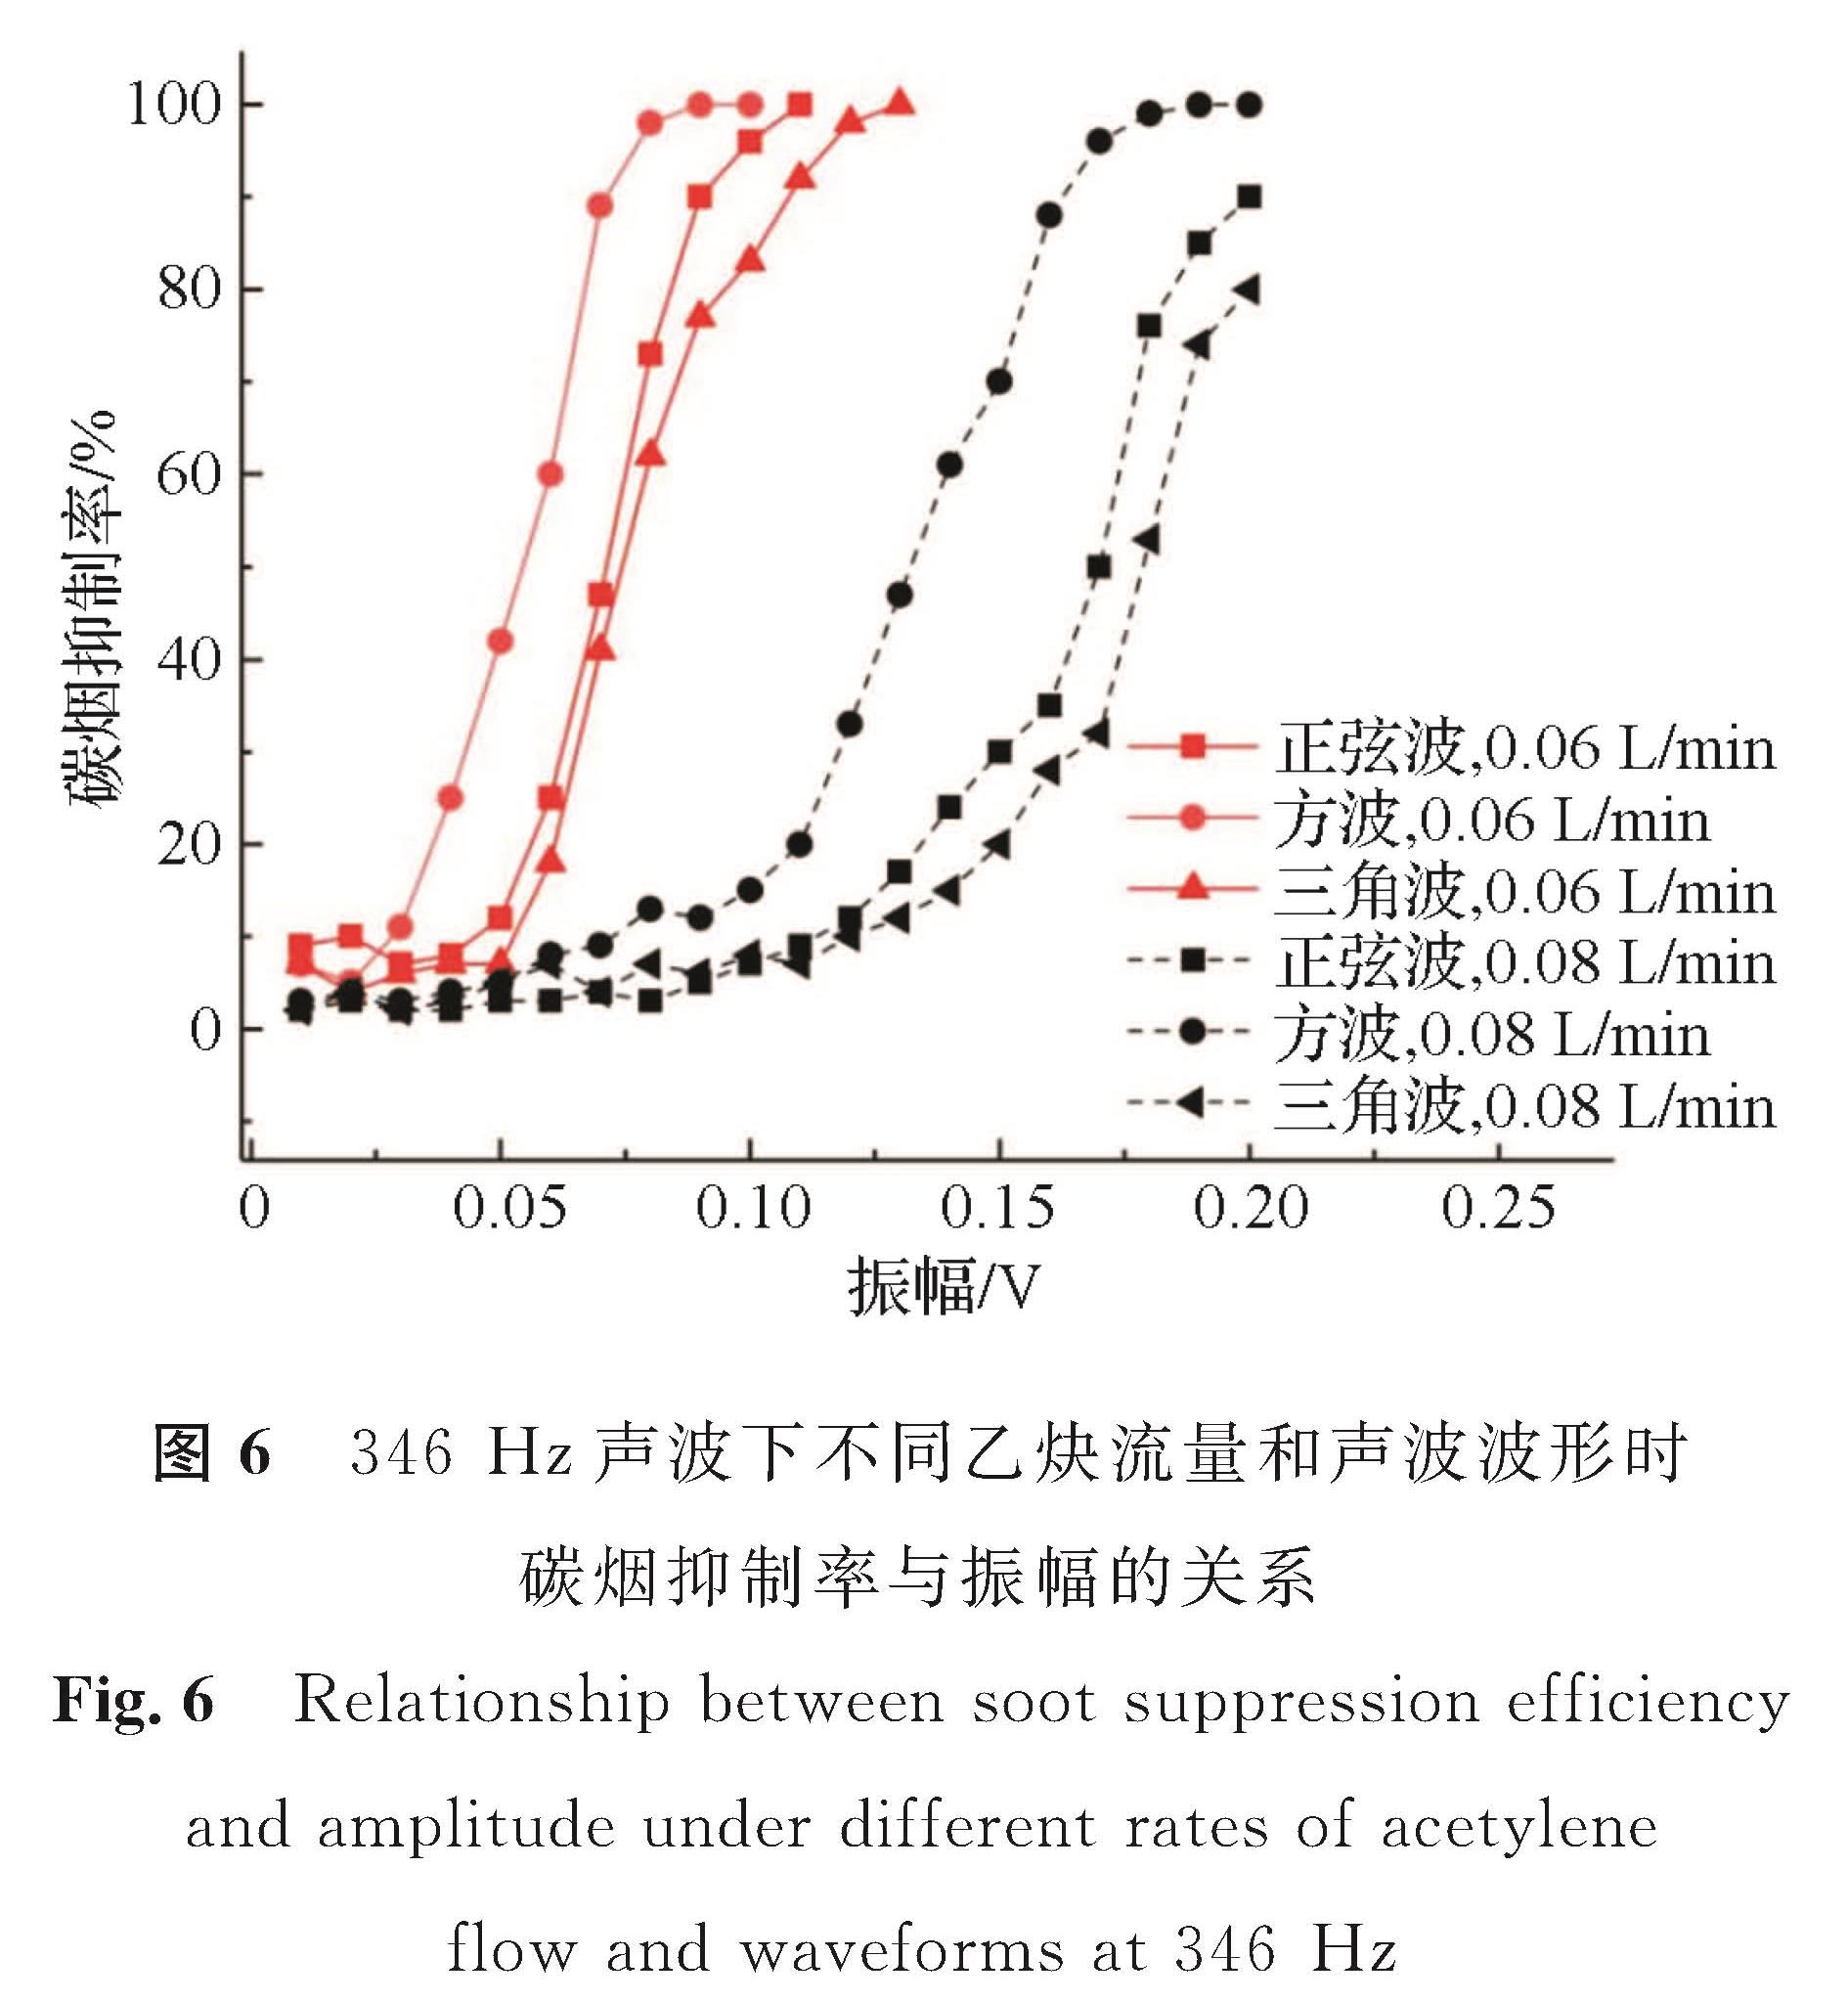 图6 346Hz声波下不同乙炔流量和声波波形时碳烟抑制率与振幅的关系<br/>Fig.6 Relationship between soot suppression efficiency and amplitude under different rates of acetylene flow and waveforms at 346 Hz